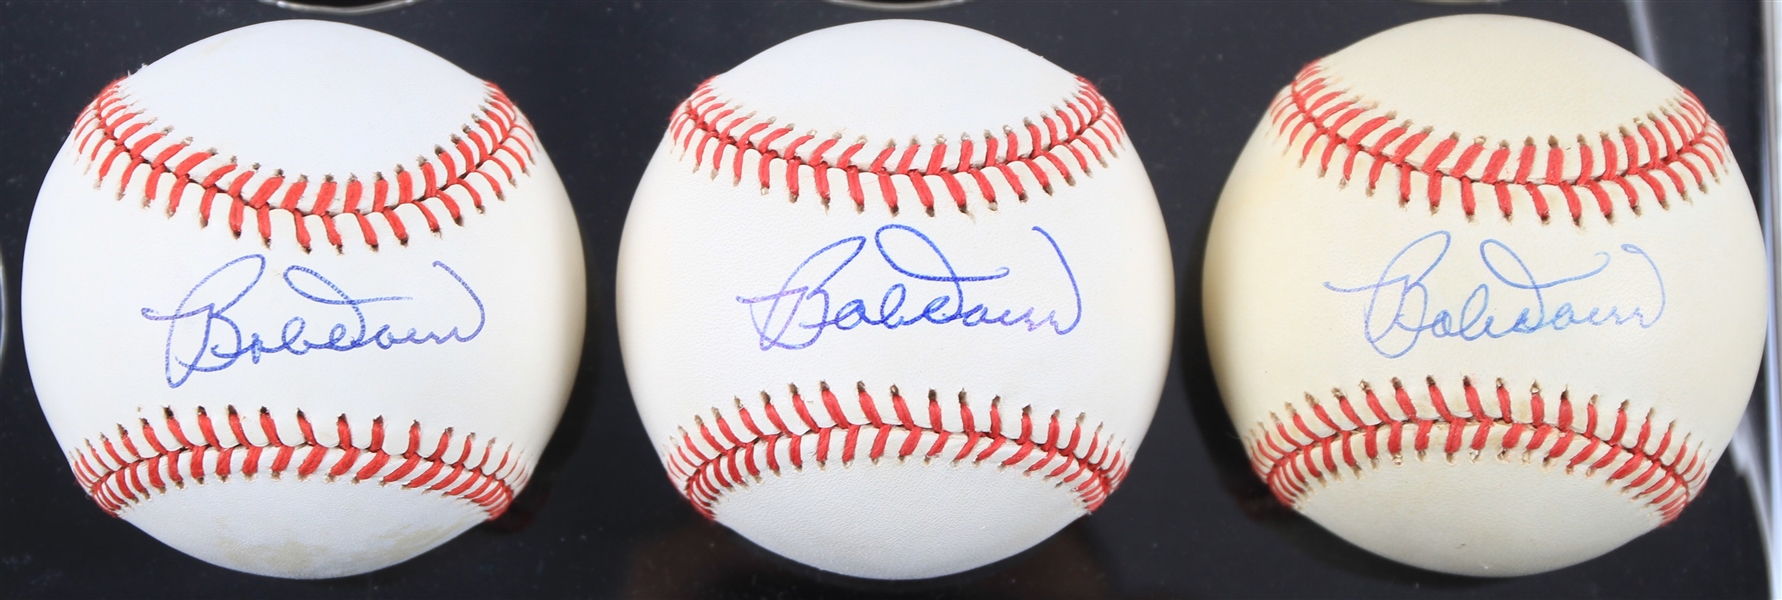 1985-92 Bobby Doerr Boston Red Sox Signed OAL Brown Baseballs - Lot of 3 (JSA)